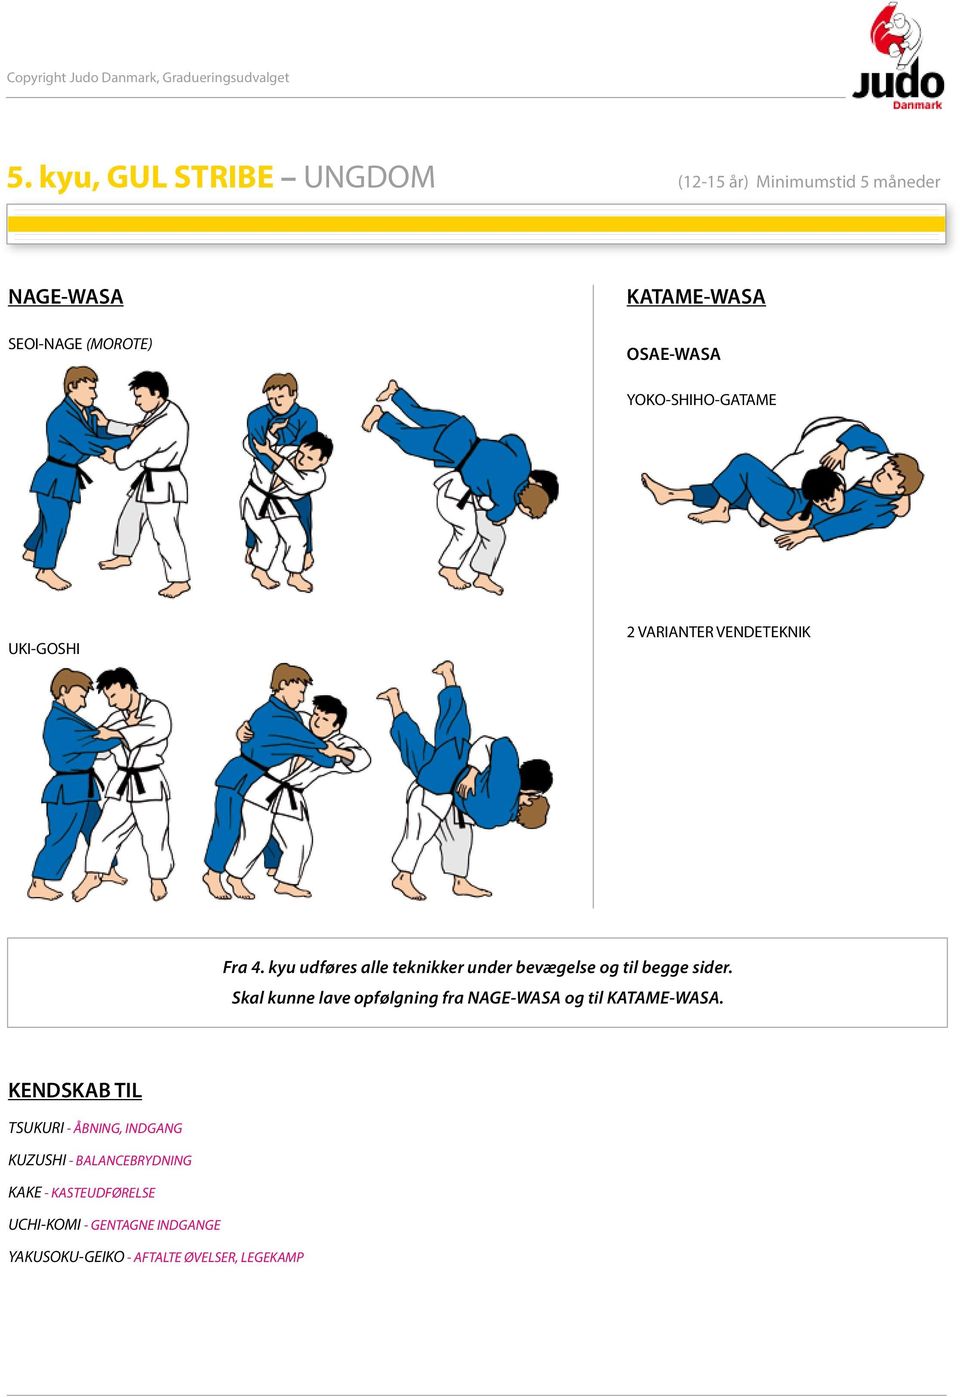 kyu udføres alle teknikker under bevægelse og til begge sider.